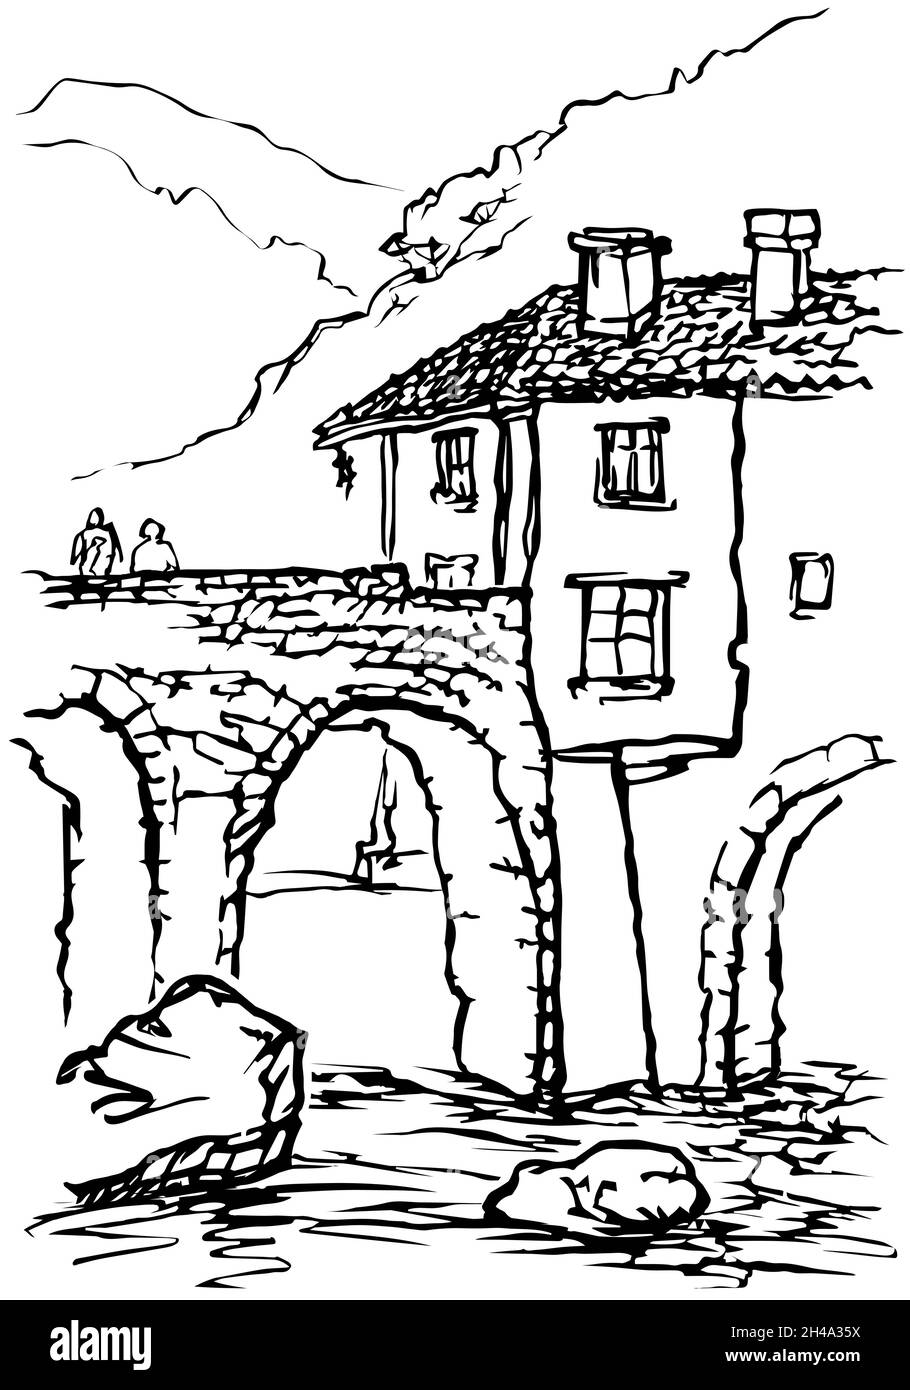 Schwarz-weiße Skizze einer alten Brücke und eines Hauses vor einem Hintergrund von Bergen. Stock Vektor